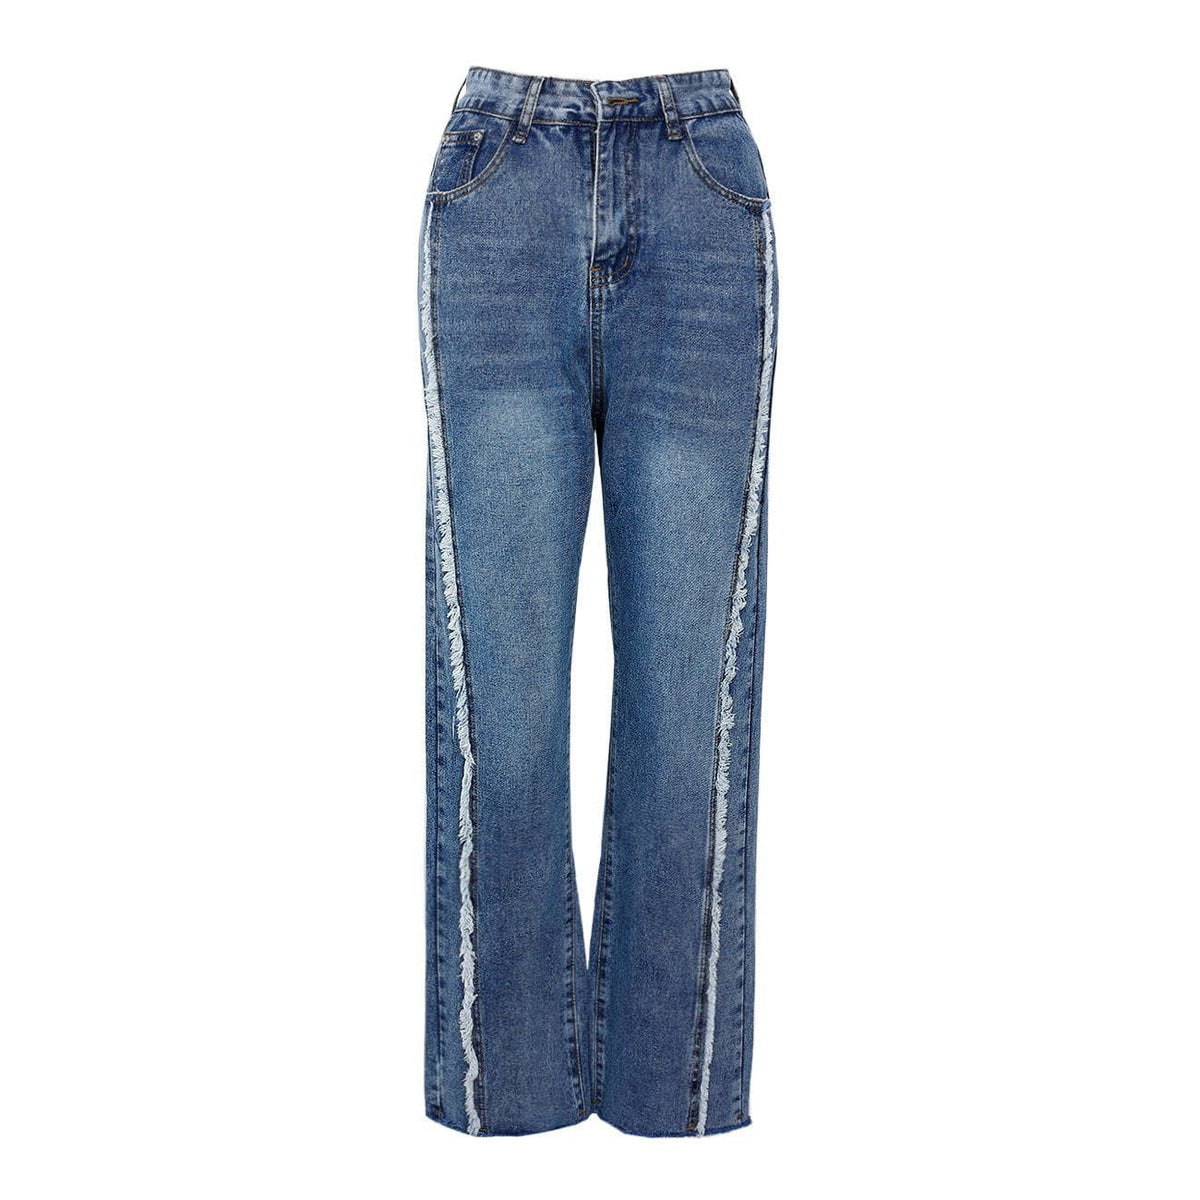 Eprezzy® - Pocket Frayed Jeans Streetwear Fashion - eprezzy.com